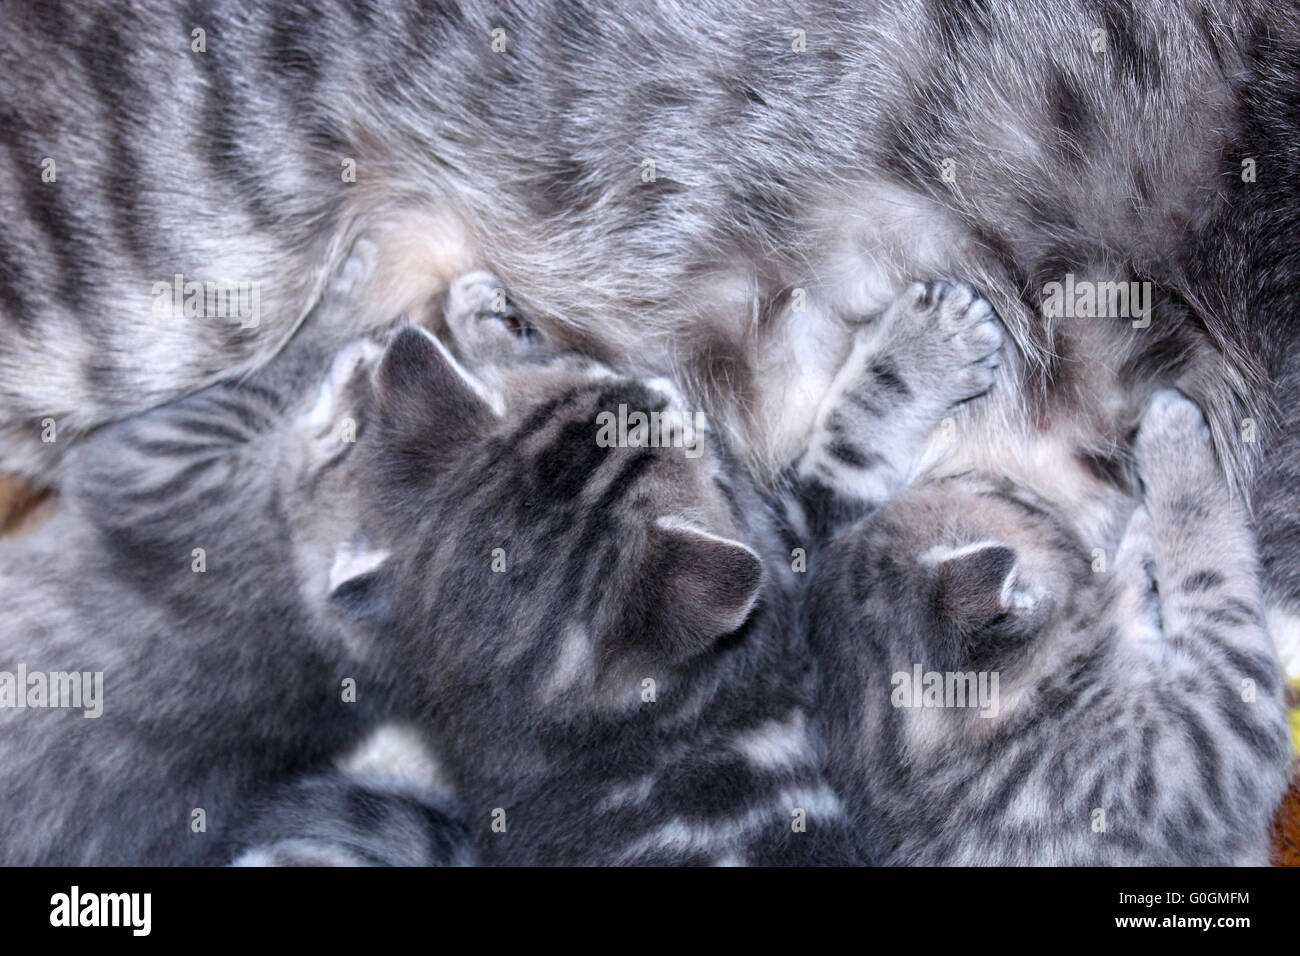 newborn kittens of Scottish Straight suck their cat mother Stock Photo